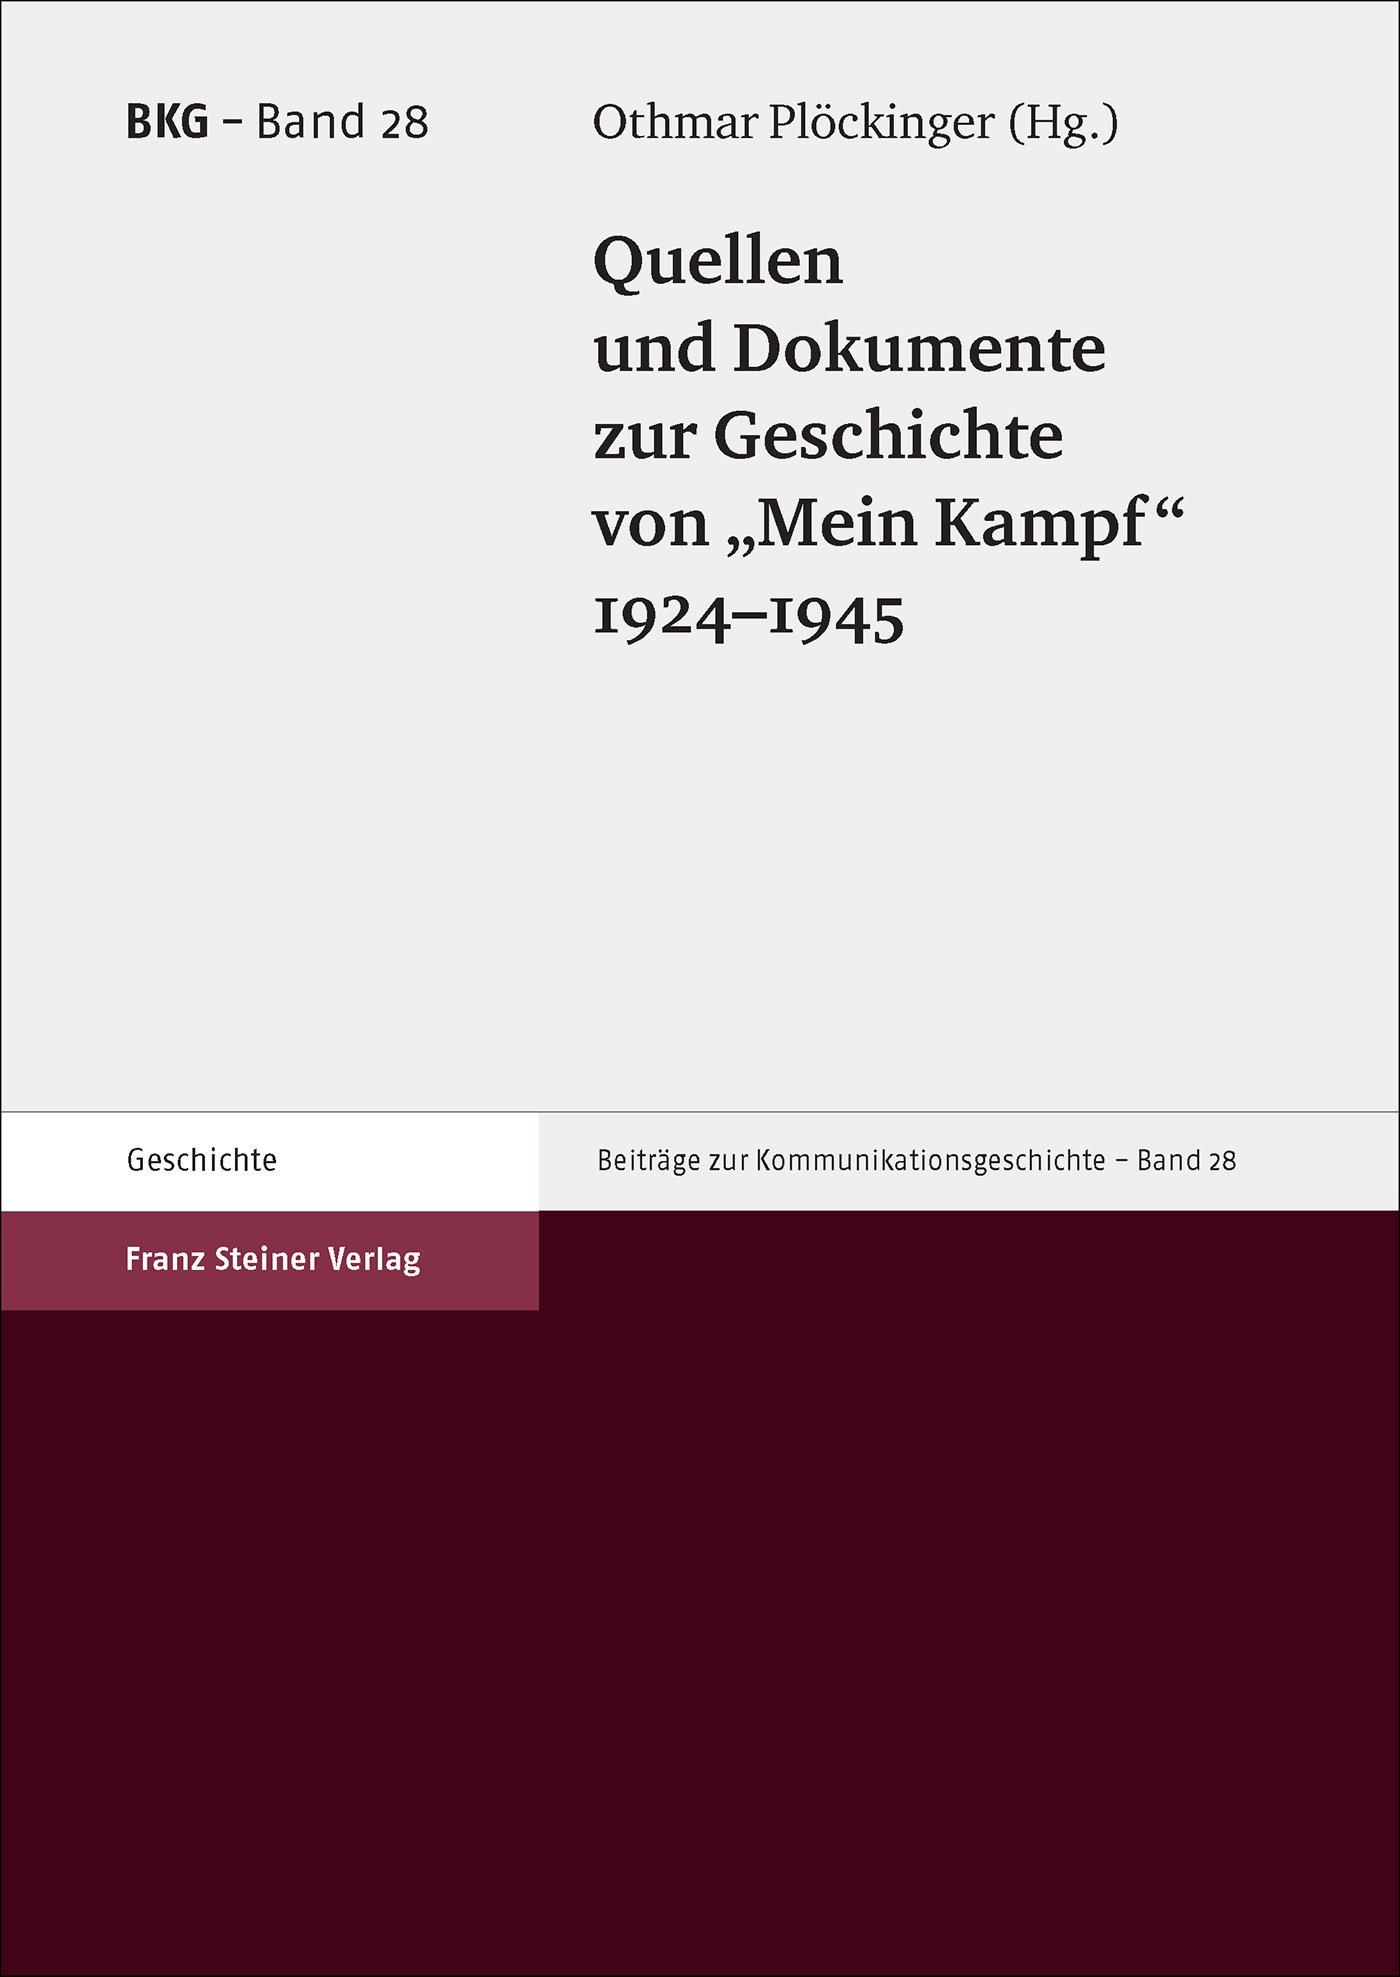 Quellen und Dokumente zur Geschichte von "Mein Kampf" 1924–1945